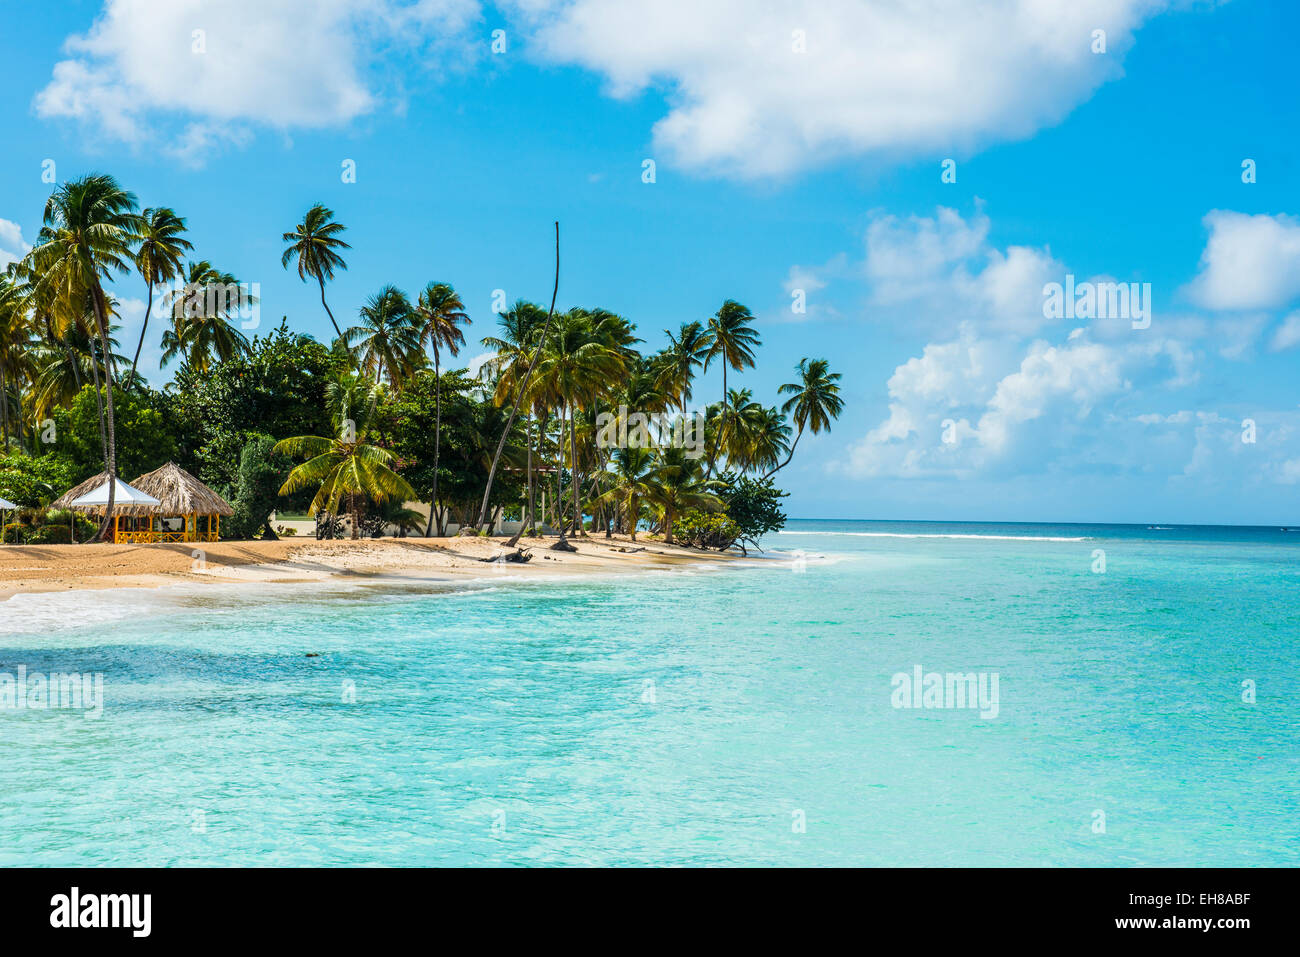 Plage de sable fin et de palmiers de Pigeon Point, Tobago, Trinité-et-Tobago, Antilles, Caraïbes, Amérique Centrale Banque D'Images